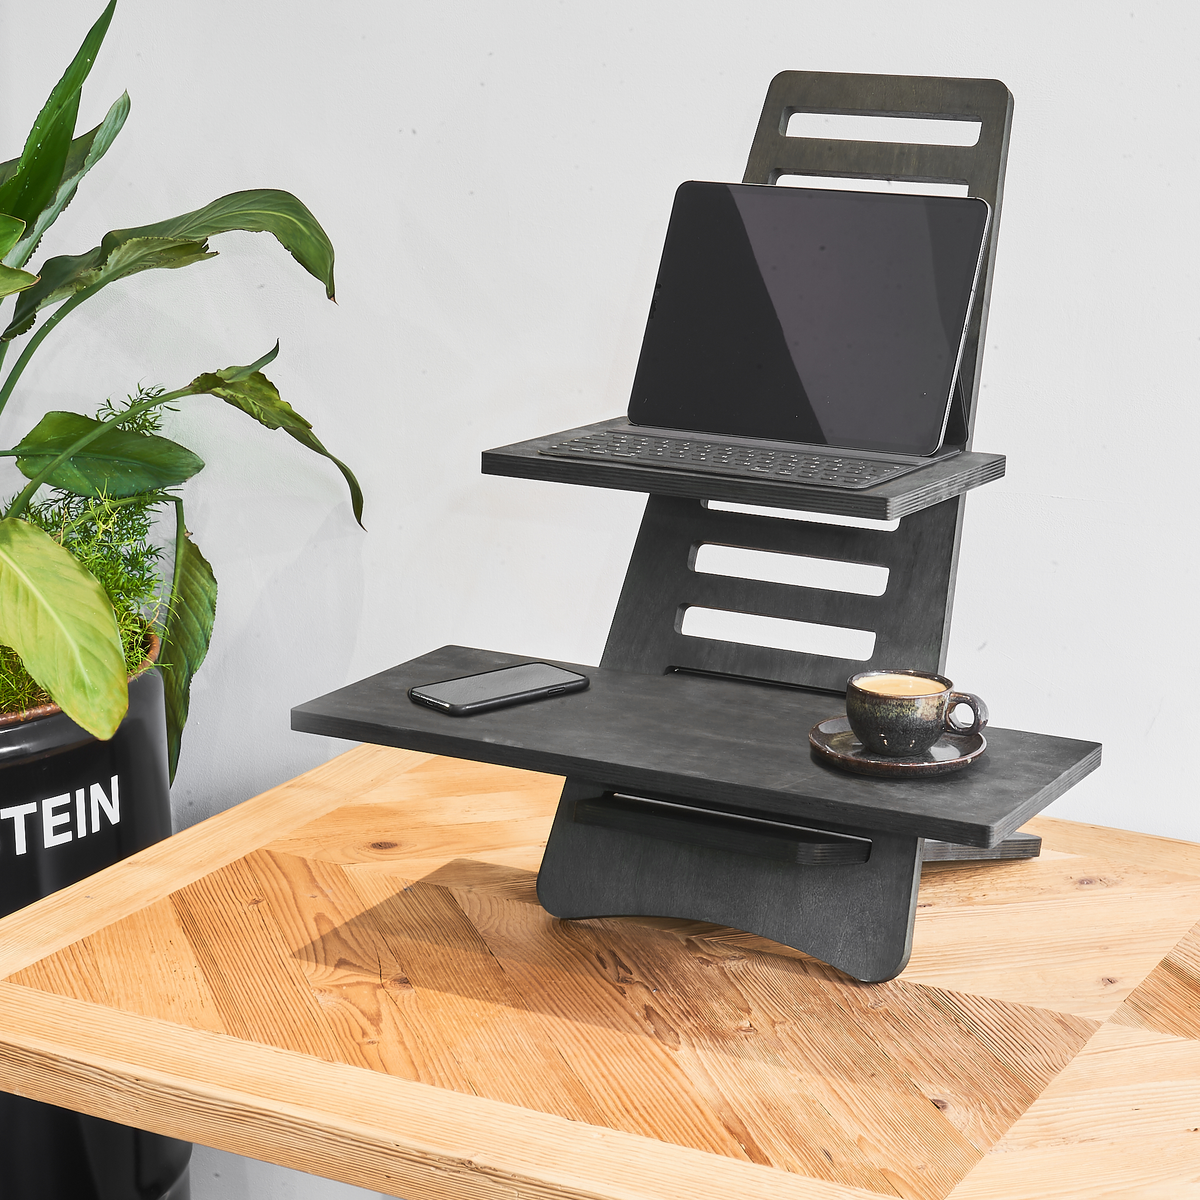 Aufgebauter schwarzer Stehtisch aus Holz auf einem Schreibtisch mit einer Tasse Kaffee, einem Tablet und einem Handy